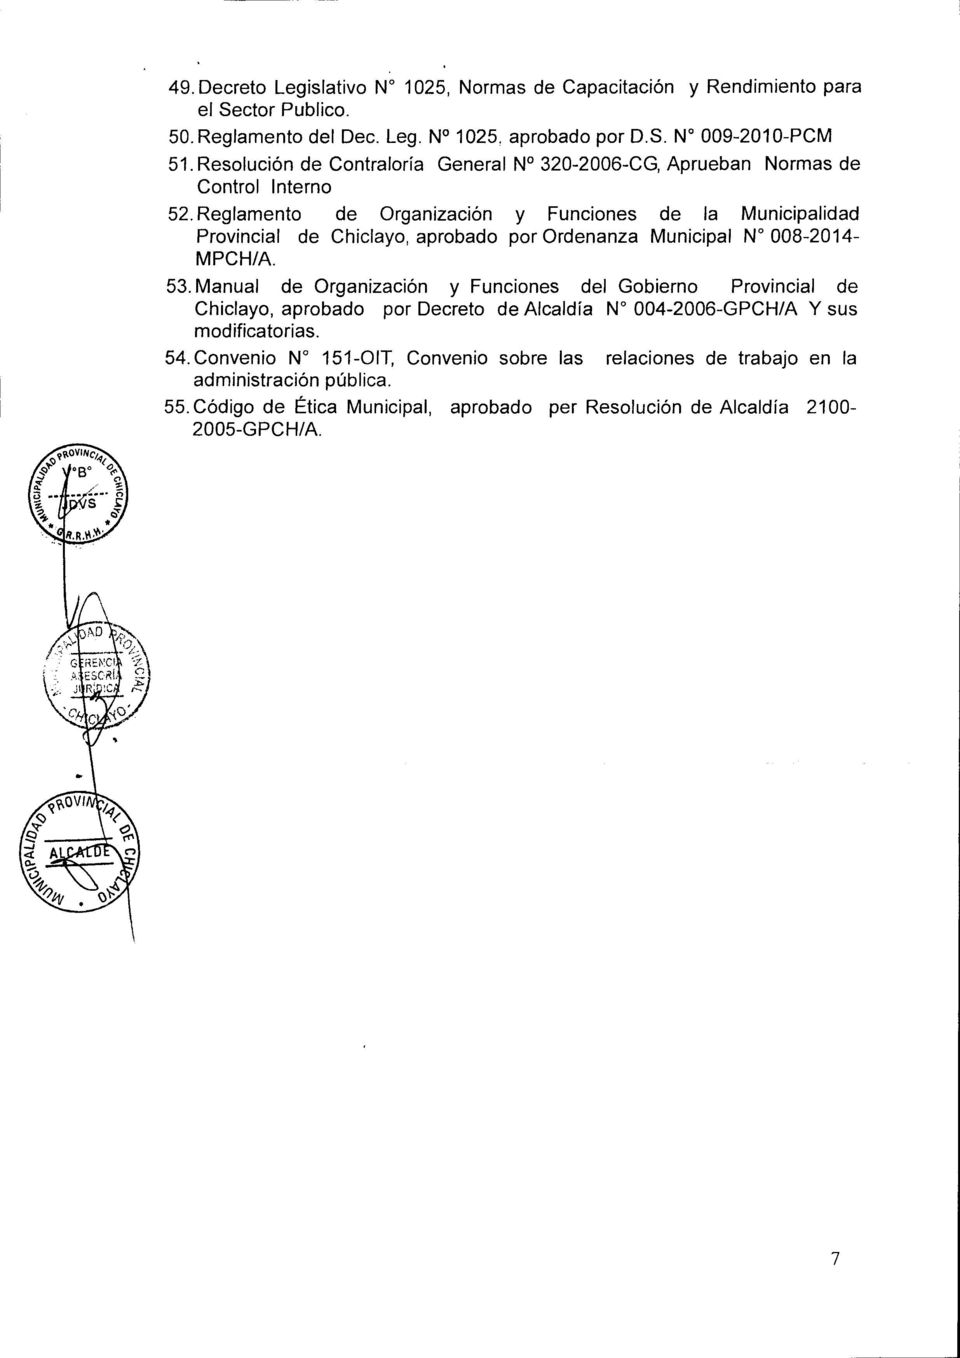 Reglamento de Organización y Funciones de la Municipalidad Provincial de Chiclayo, aprobado por Ordenanza Municipal N 008-2014- MPCH/A. 53.